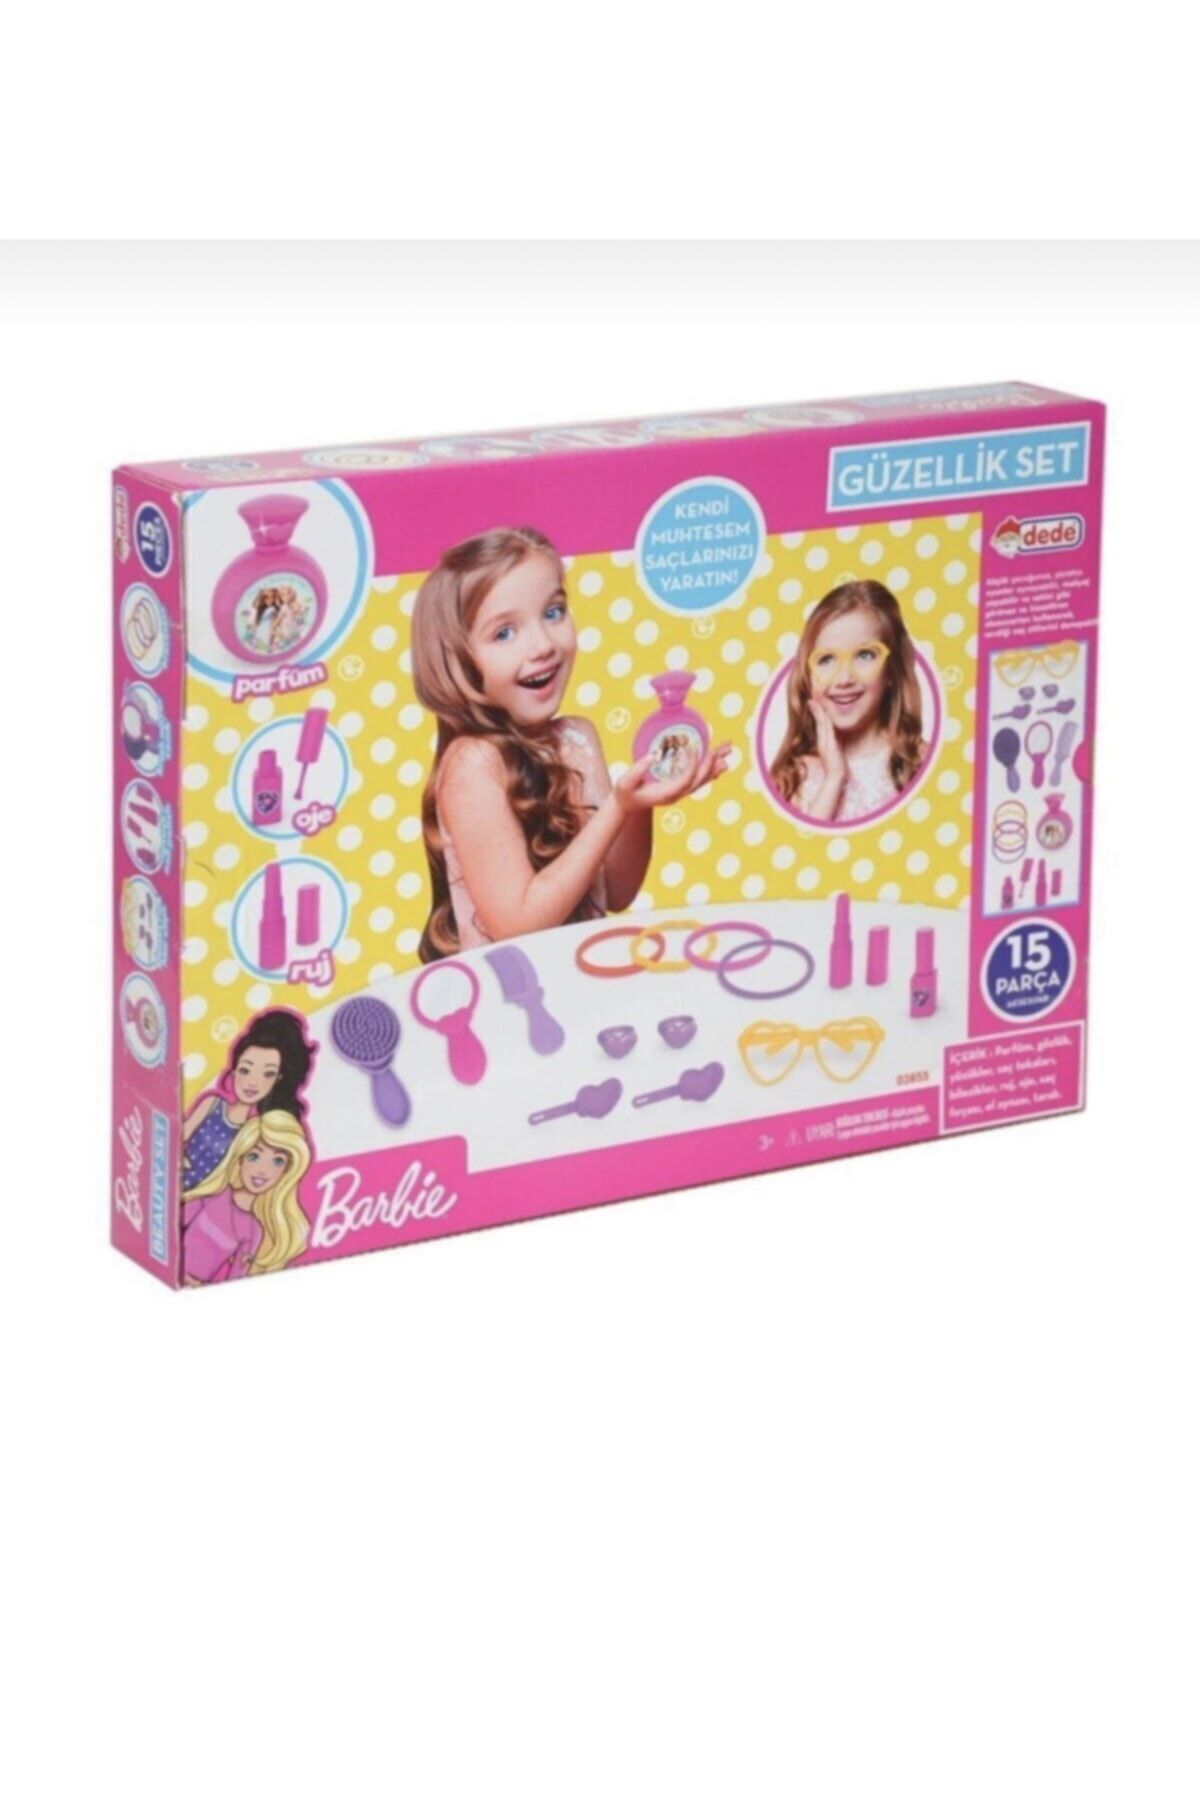 DEDE Barbie Kutulu Güzellik Seti 15 Parça Oyuncak